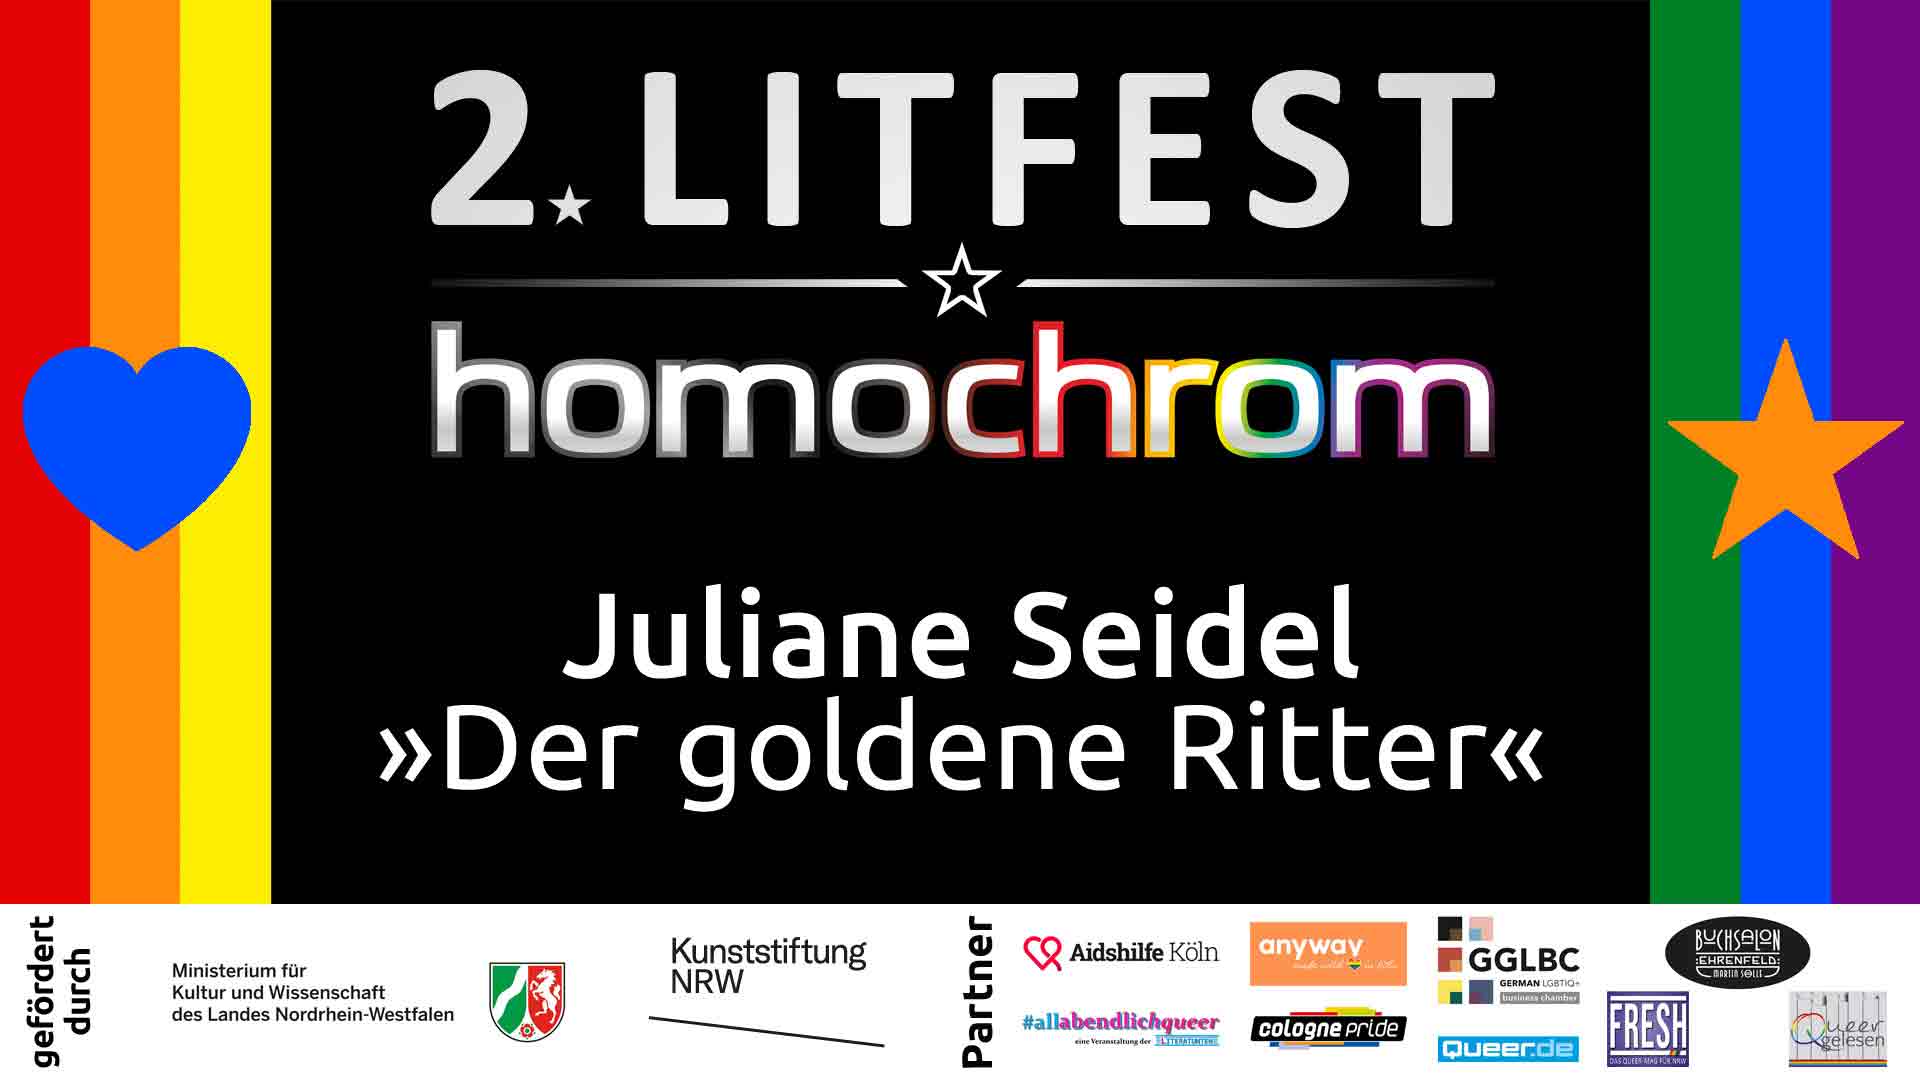  Youtube Video, Juliane Seidel, 2. Litfest homochrom